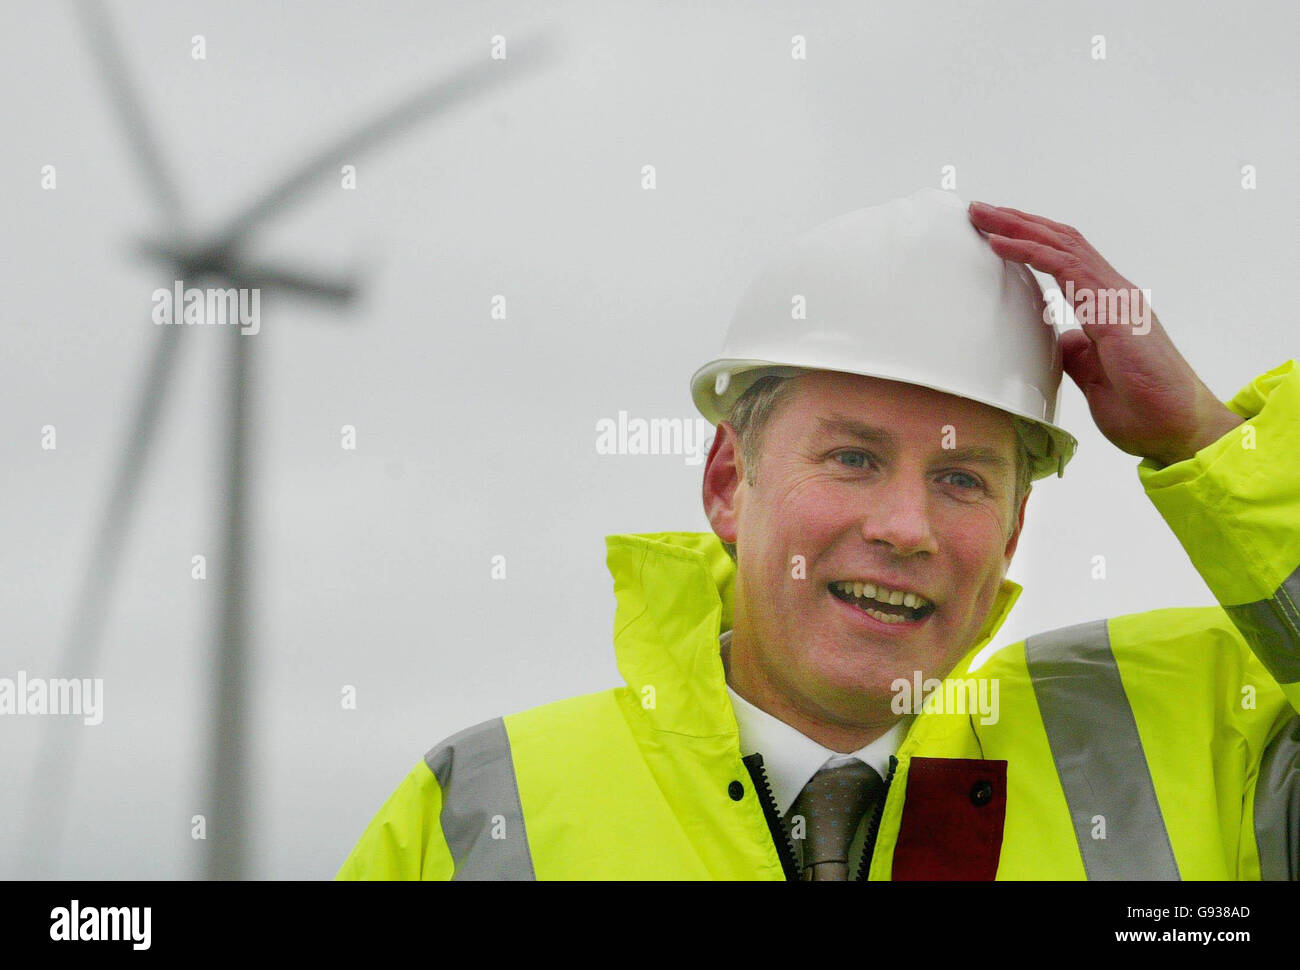 `s größte Windprojekt Großbritanniens von Scottish Power wird am Donnerstag, dem 12. Januar 2006, auf dem Gelände einer alten Kohlemine im Windpark Black Law in South Lanarkshire in Schottland vom stellvertretenden Ersten Minister Nicol Stephen eröffnet, der sich an seinem Hut festhält. Stephen's behauptete, dass das Projekt Schottland dabei helfen werde, ein „Kraftpaket“ für erneuerbare Energien zu werden. Siehe PA Story SCOTLAND Windfarm. DRÜCKEN SIE VERBANDSFOTO. Bildnachweis sollte lauten: David Ceskin/PA Stockfoto